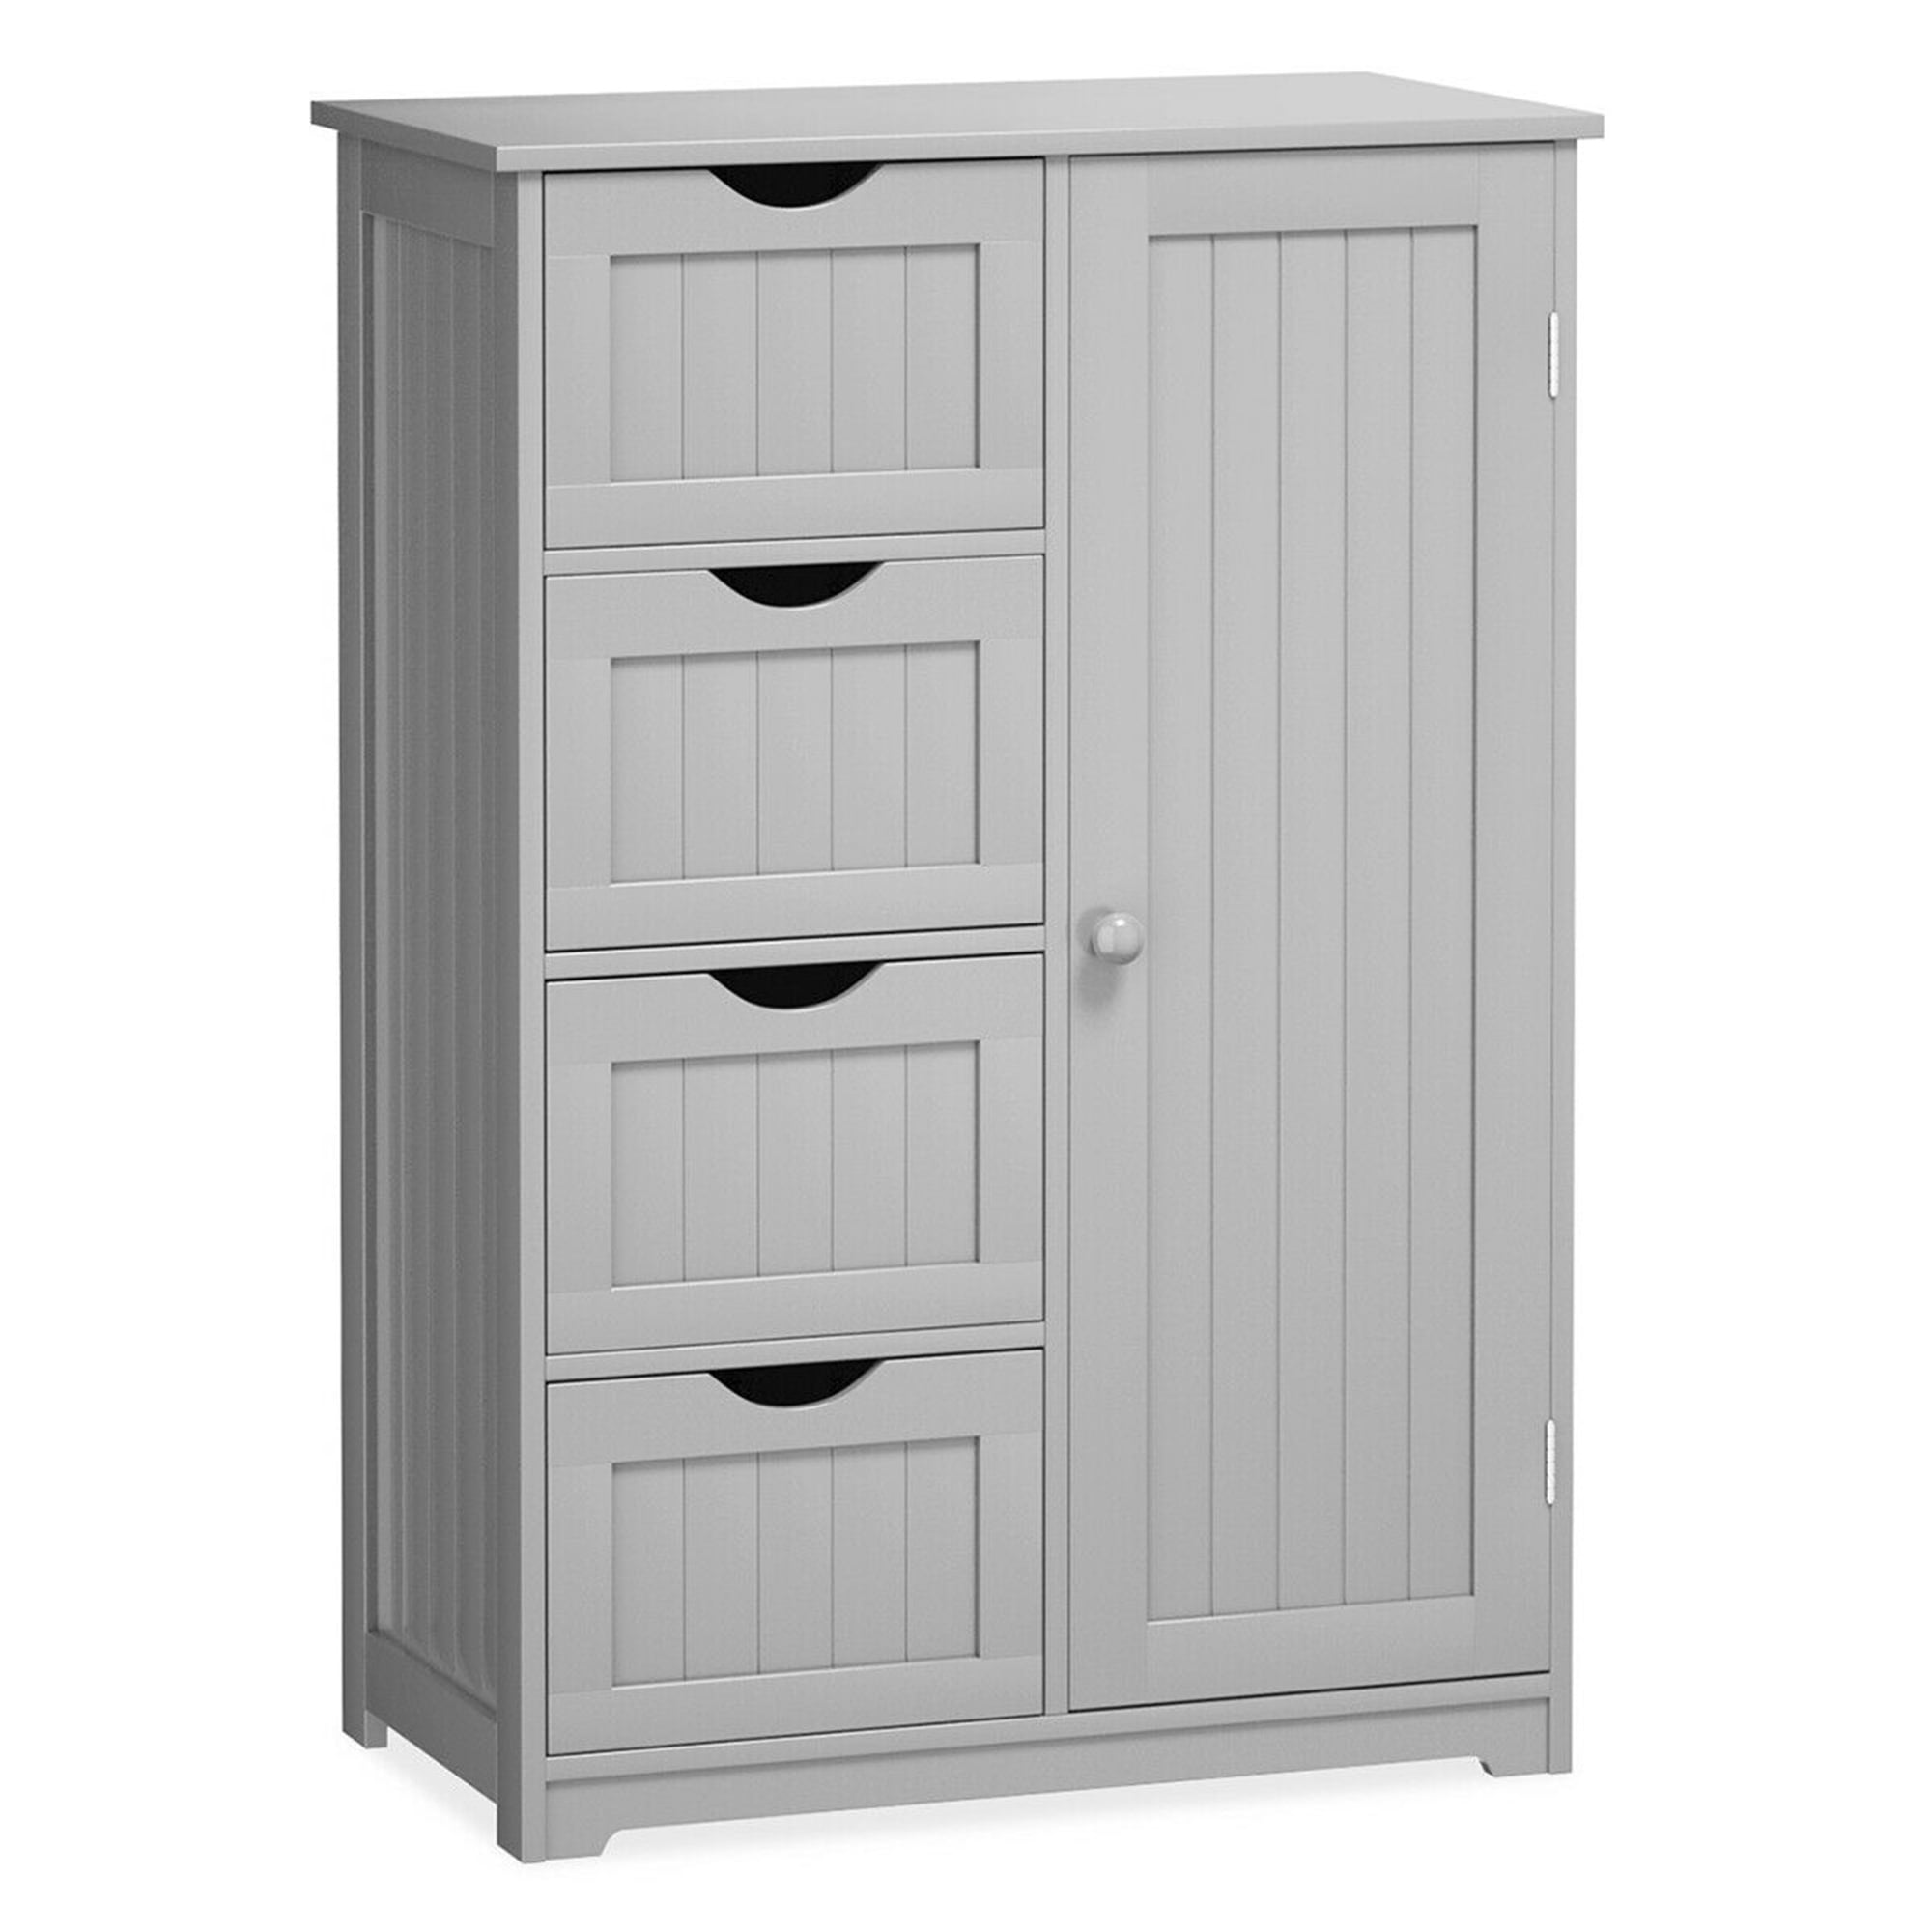 Wooden Bathroom Floor Cabinet Wooden Free Standing Storage Organizer w/ 4Drawers 